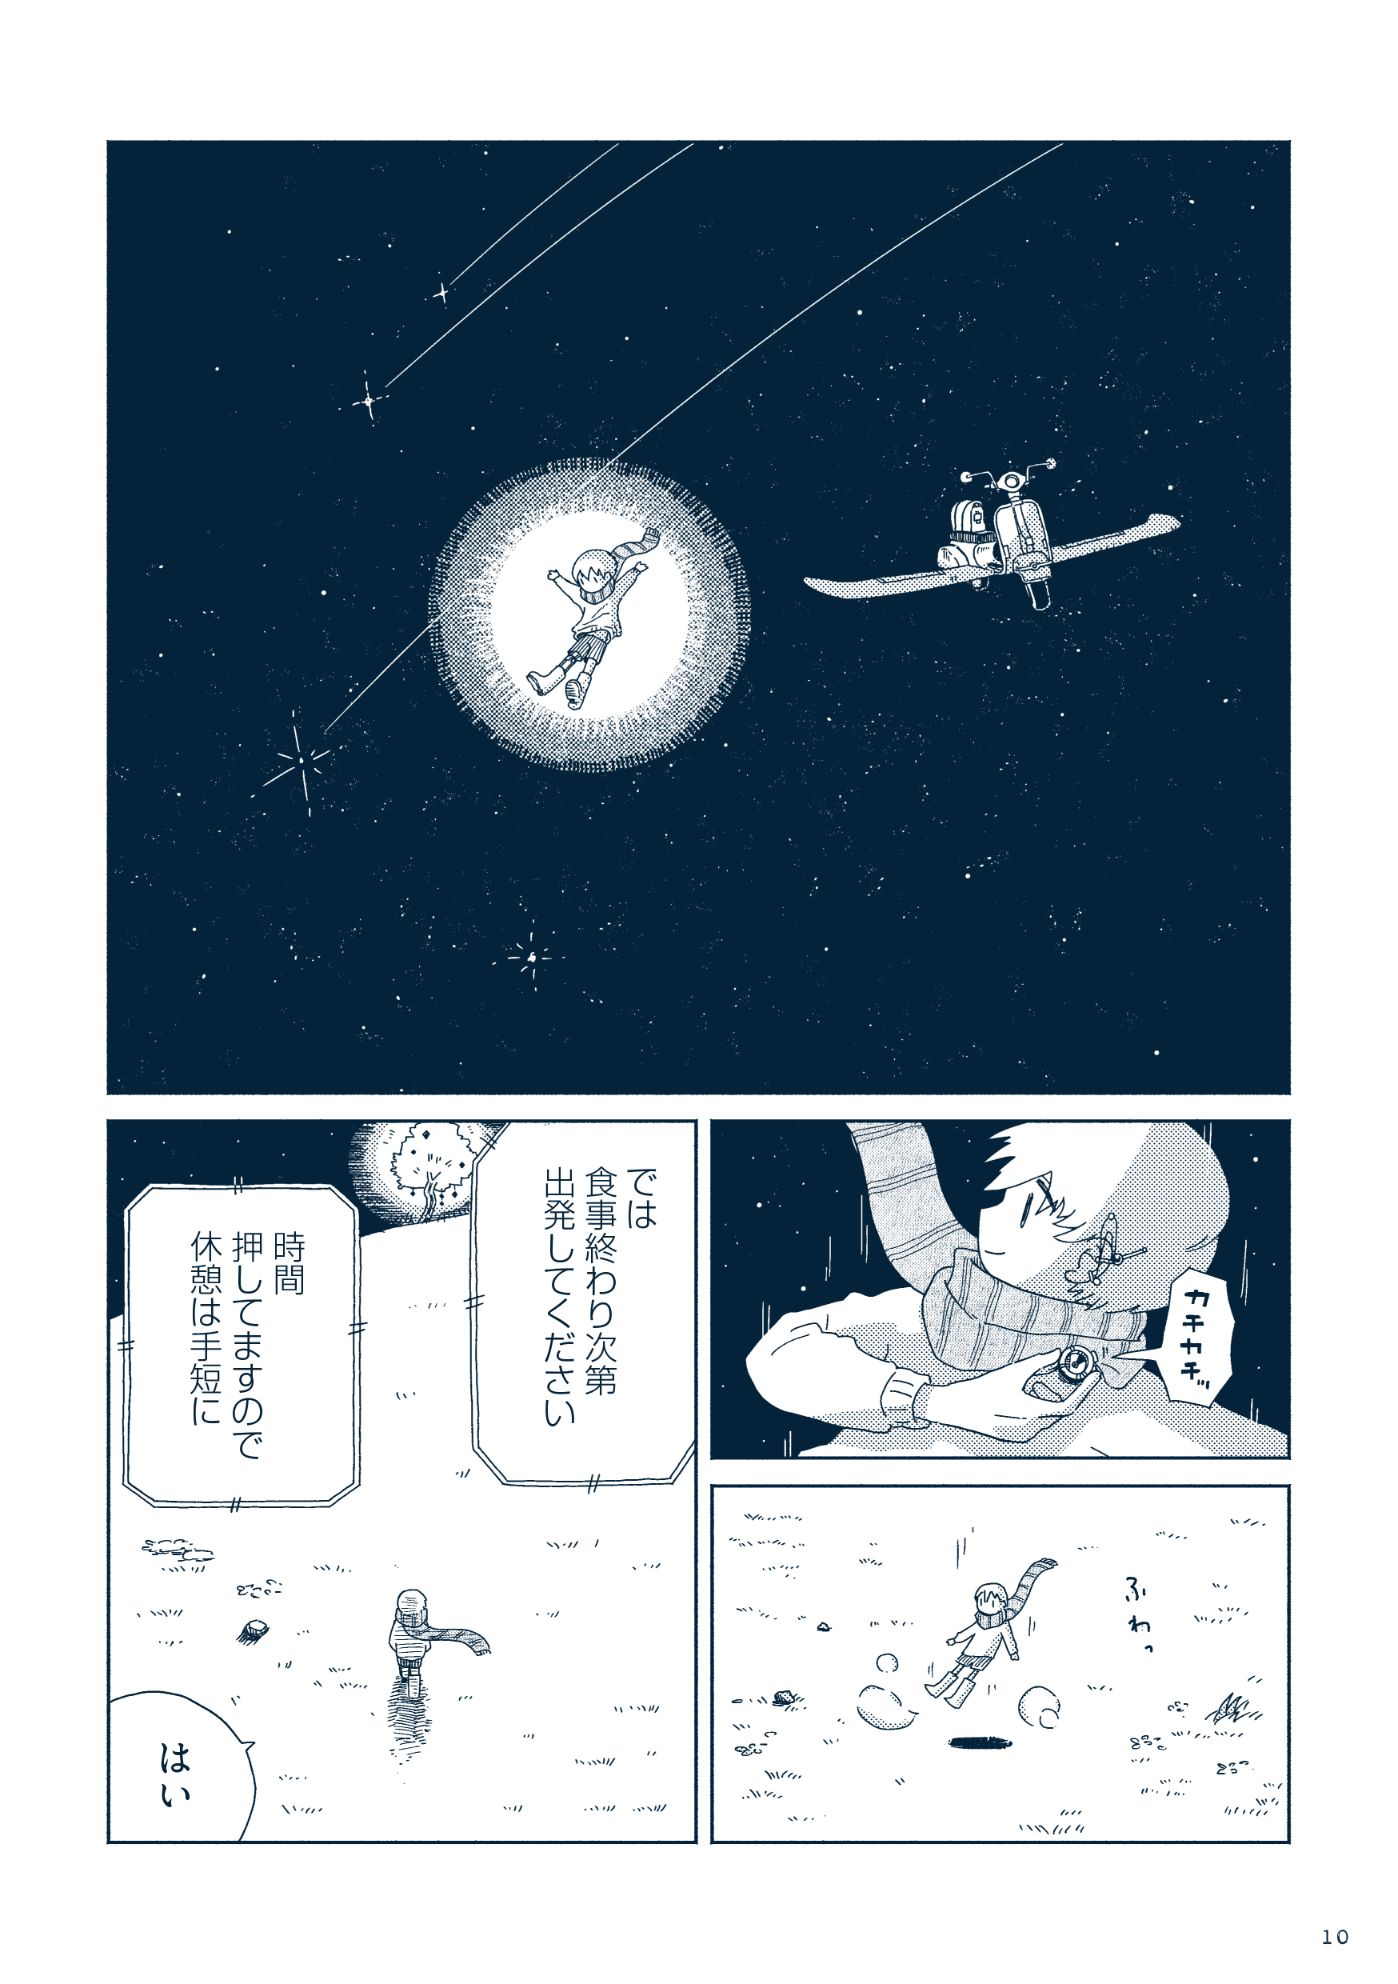 話題の漫画『星旅少年』の創作スタイルの画像